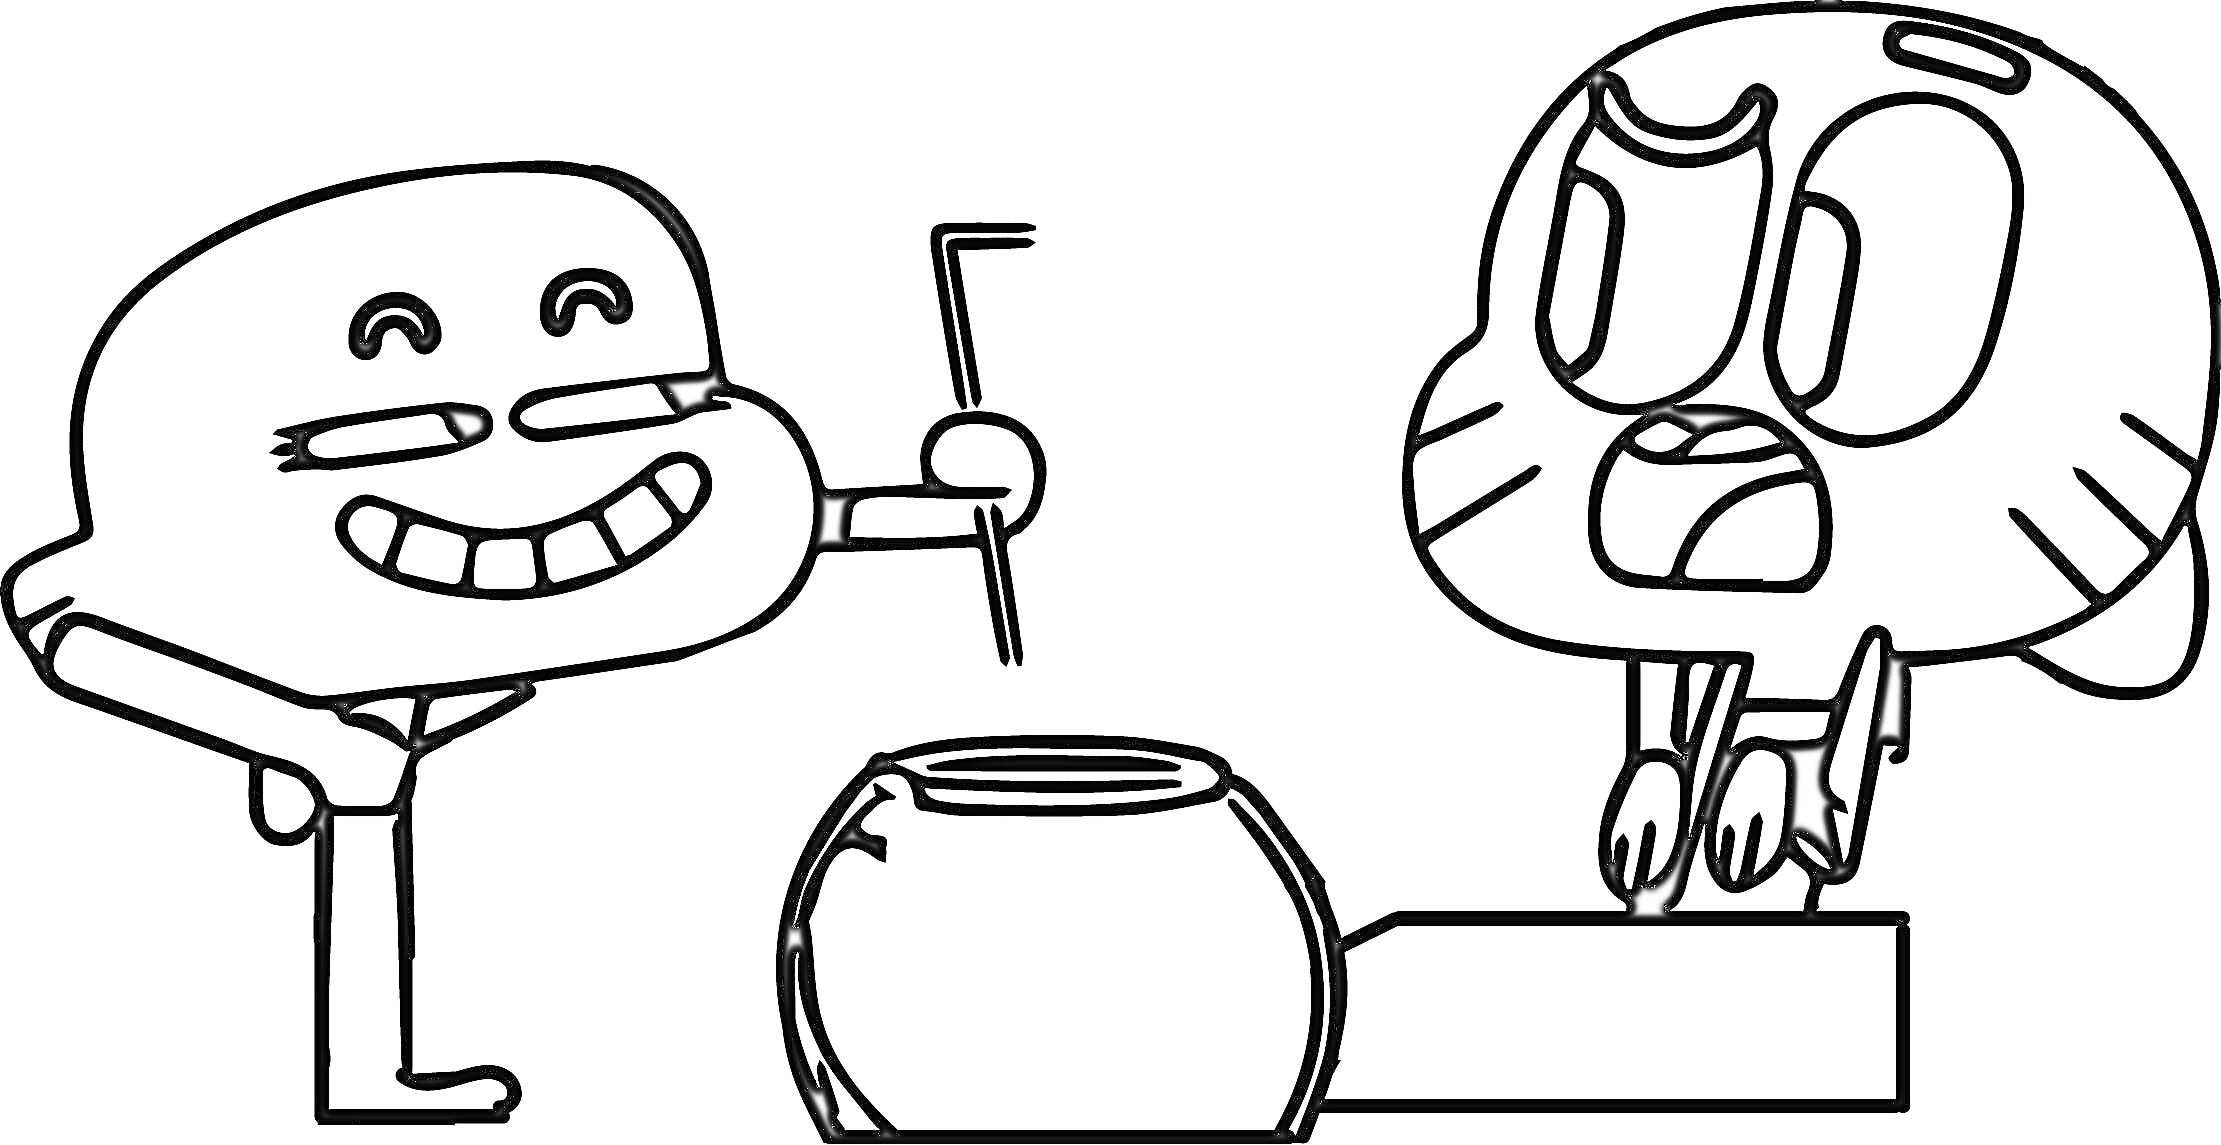 Раскраска Два персонажа из Гамбола с рыбным аквариумом